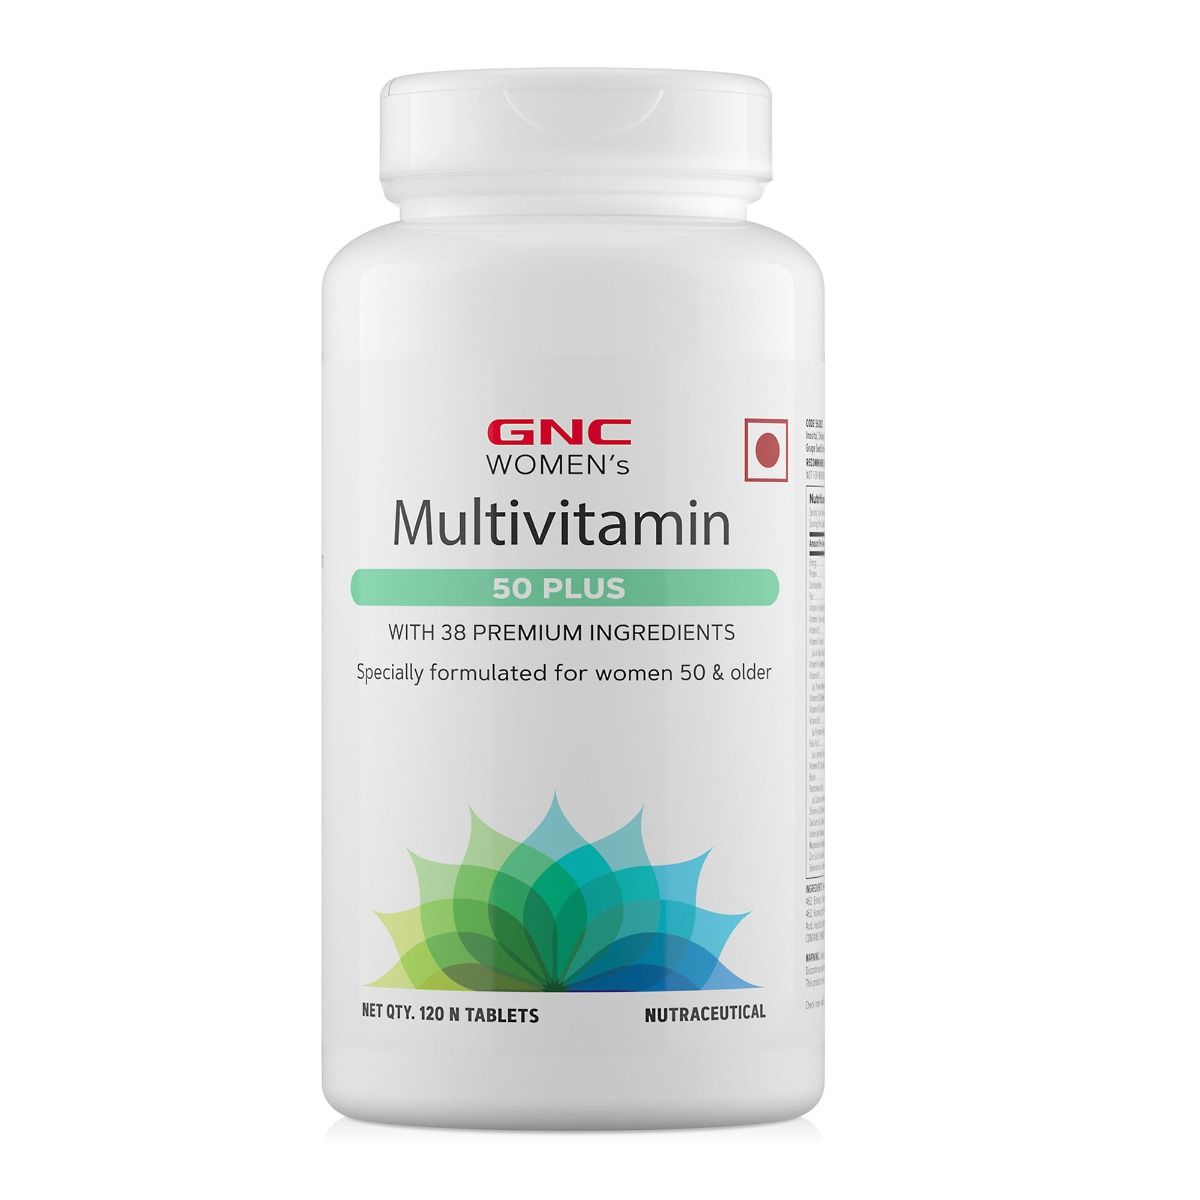 GNC Women's Multivitamin 50 Plus - 120 Tablets - Halt